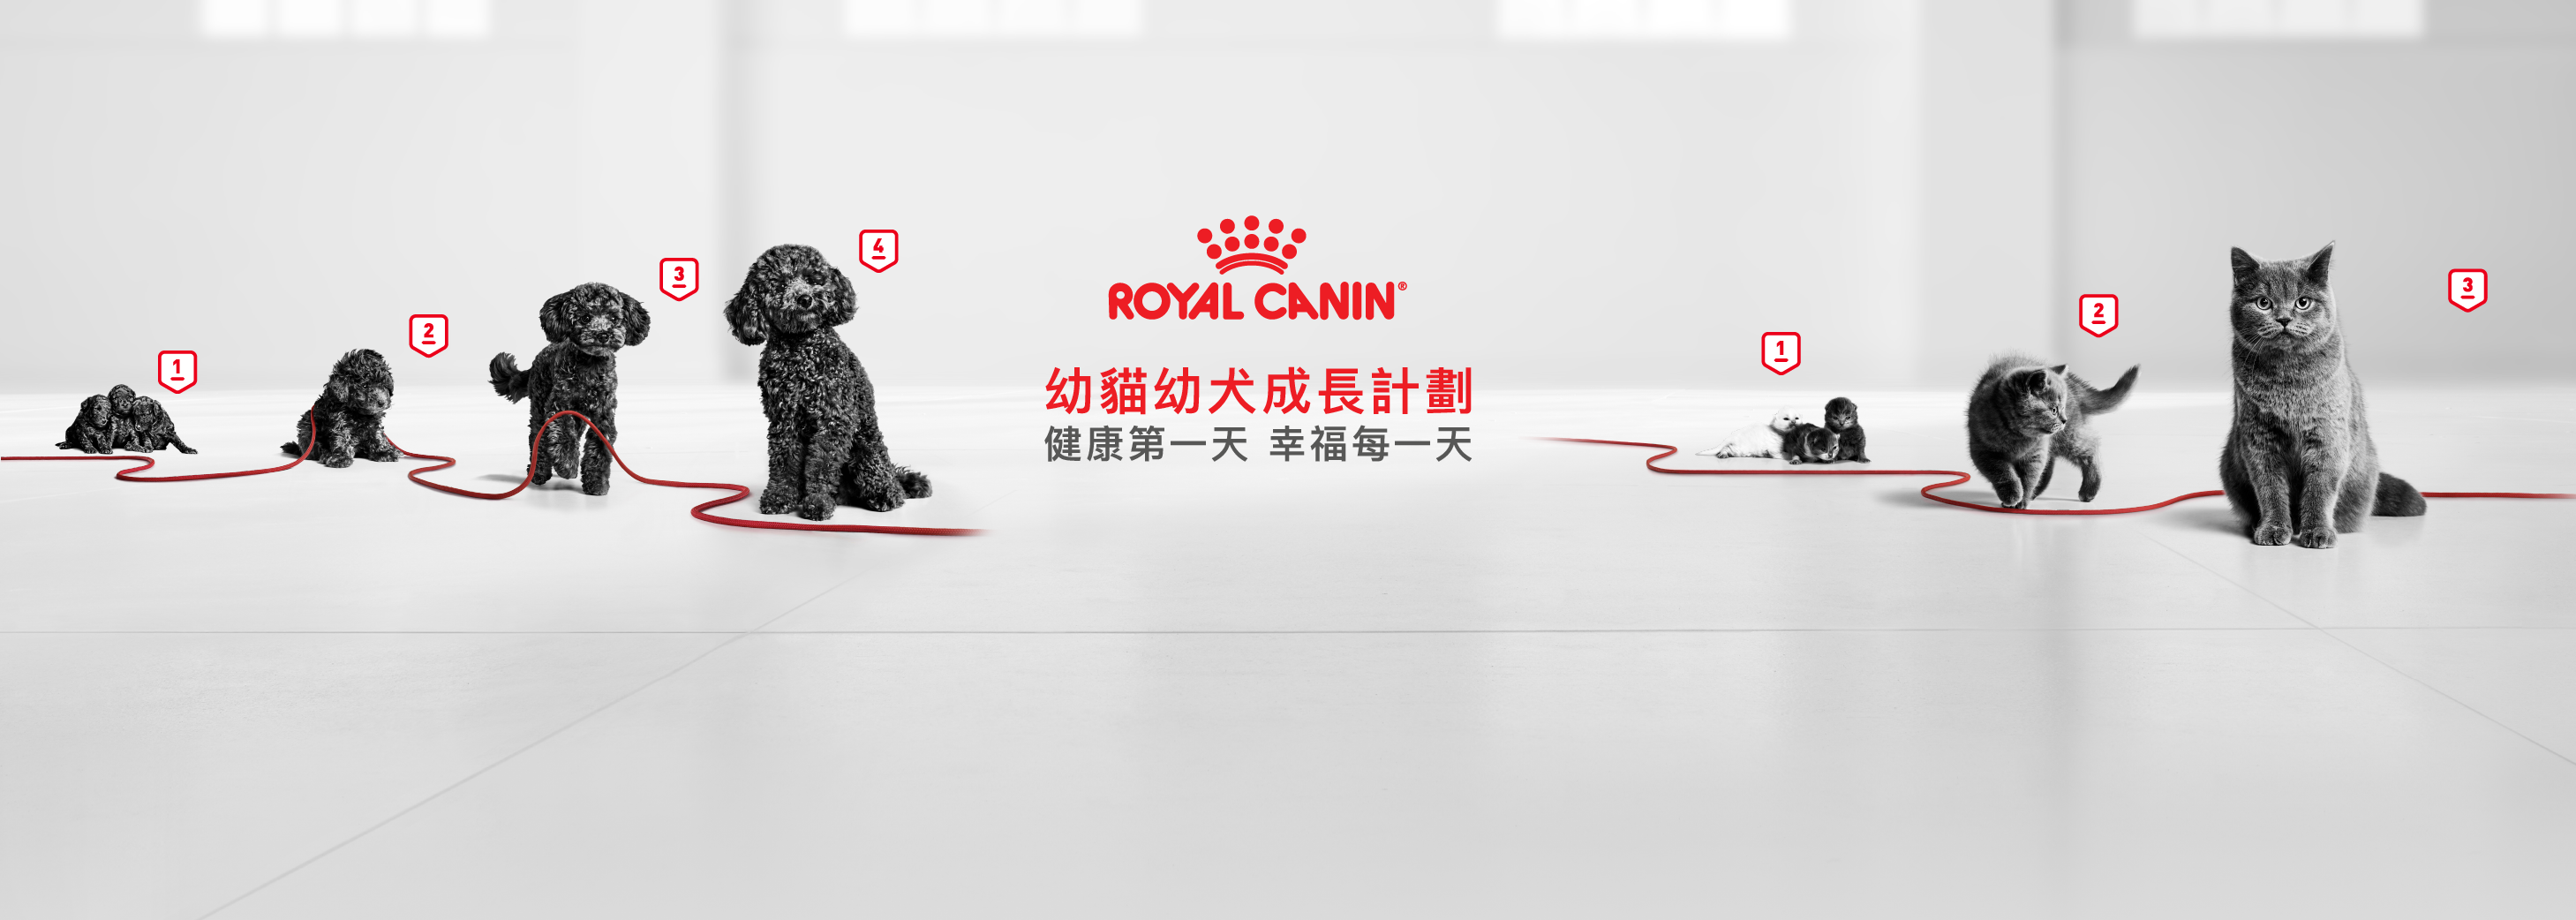 立即登記 | 索取升級版Royal Canin幼貓幼犬營養系列產品體驗裝